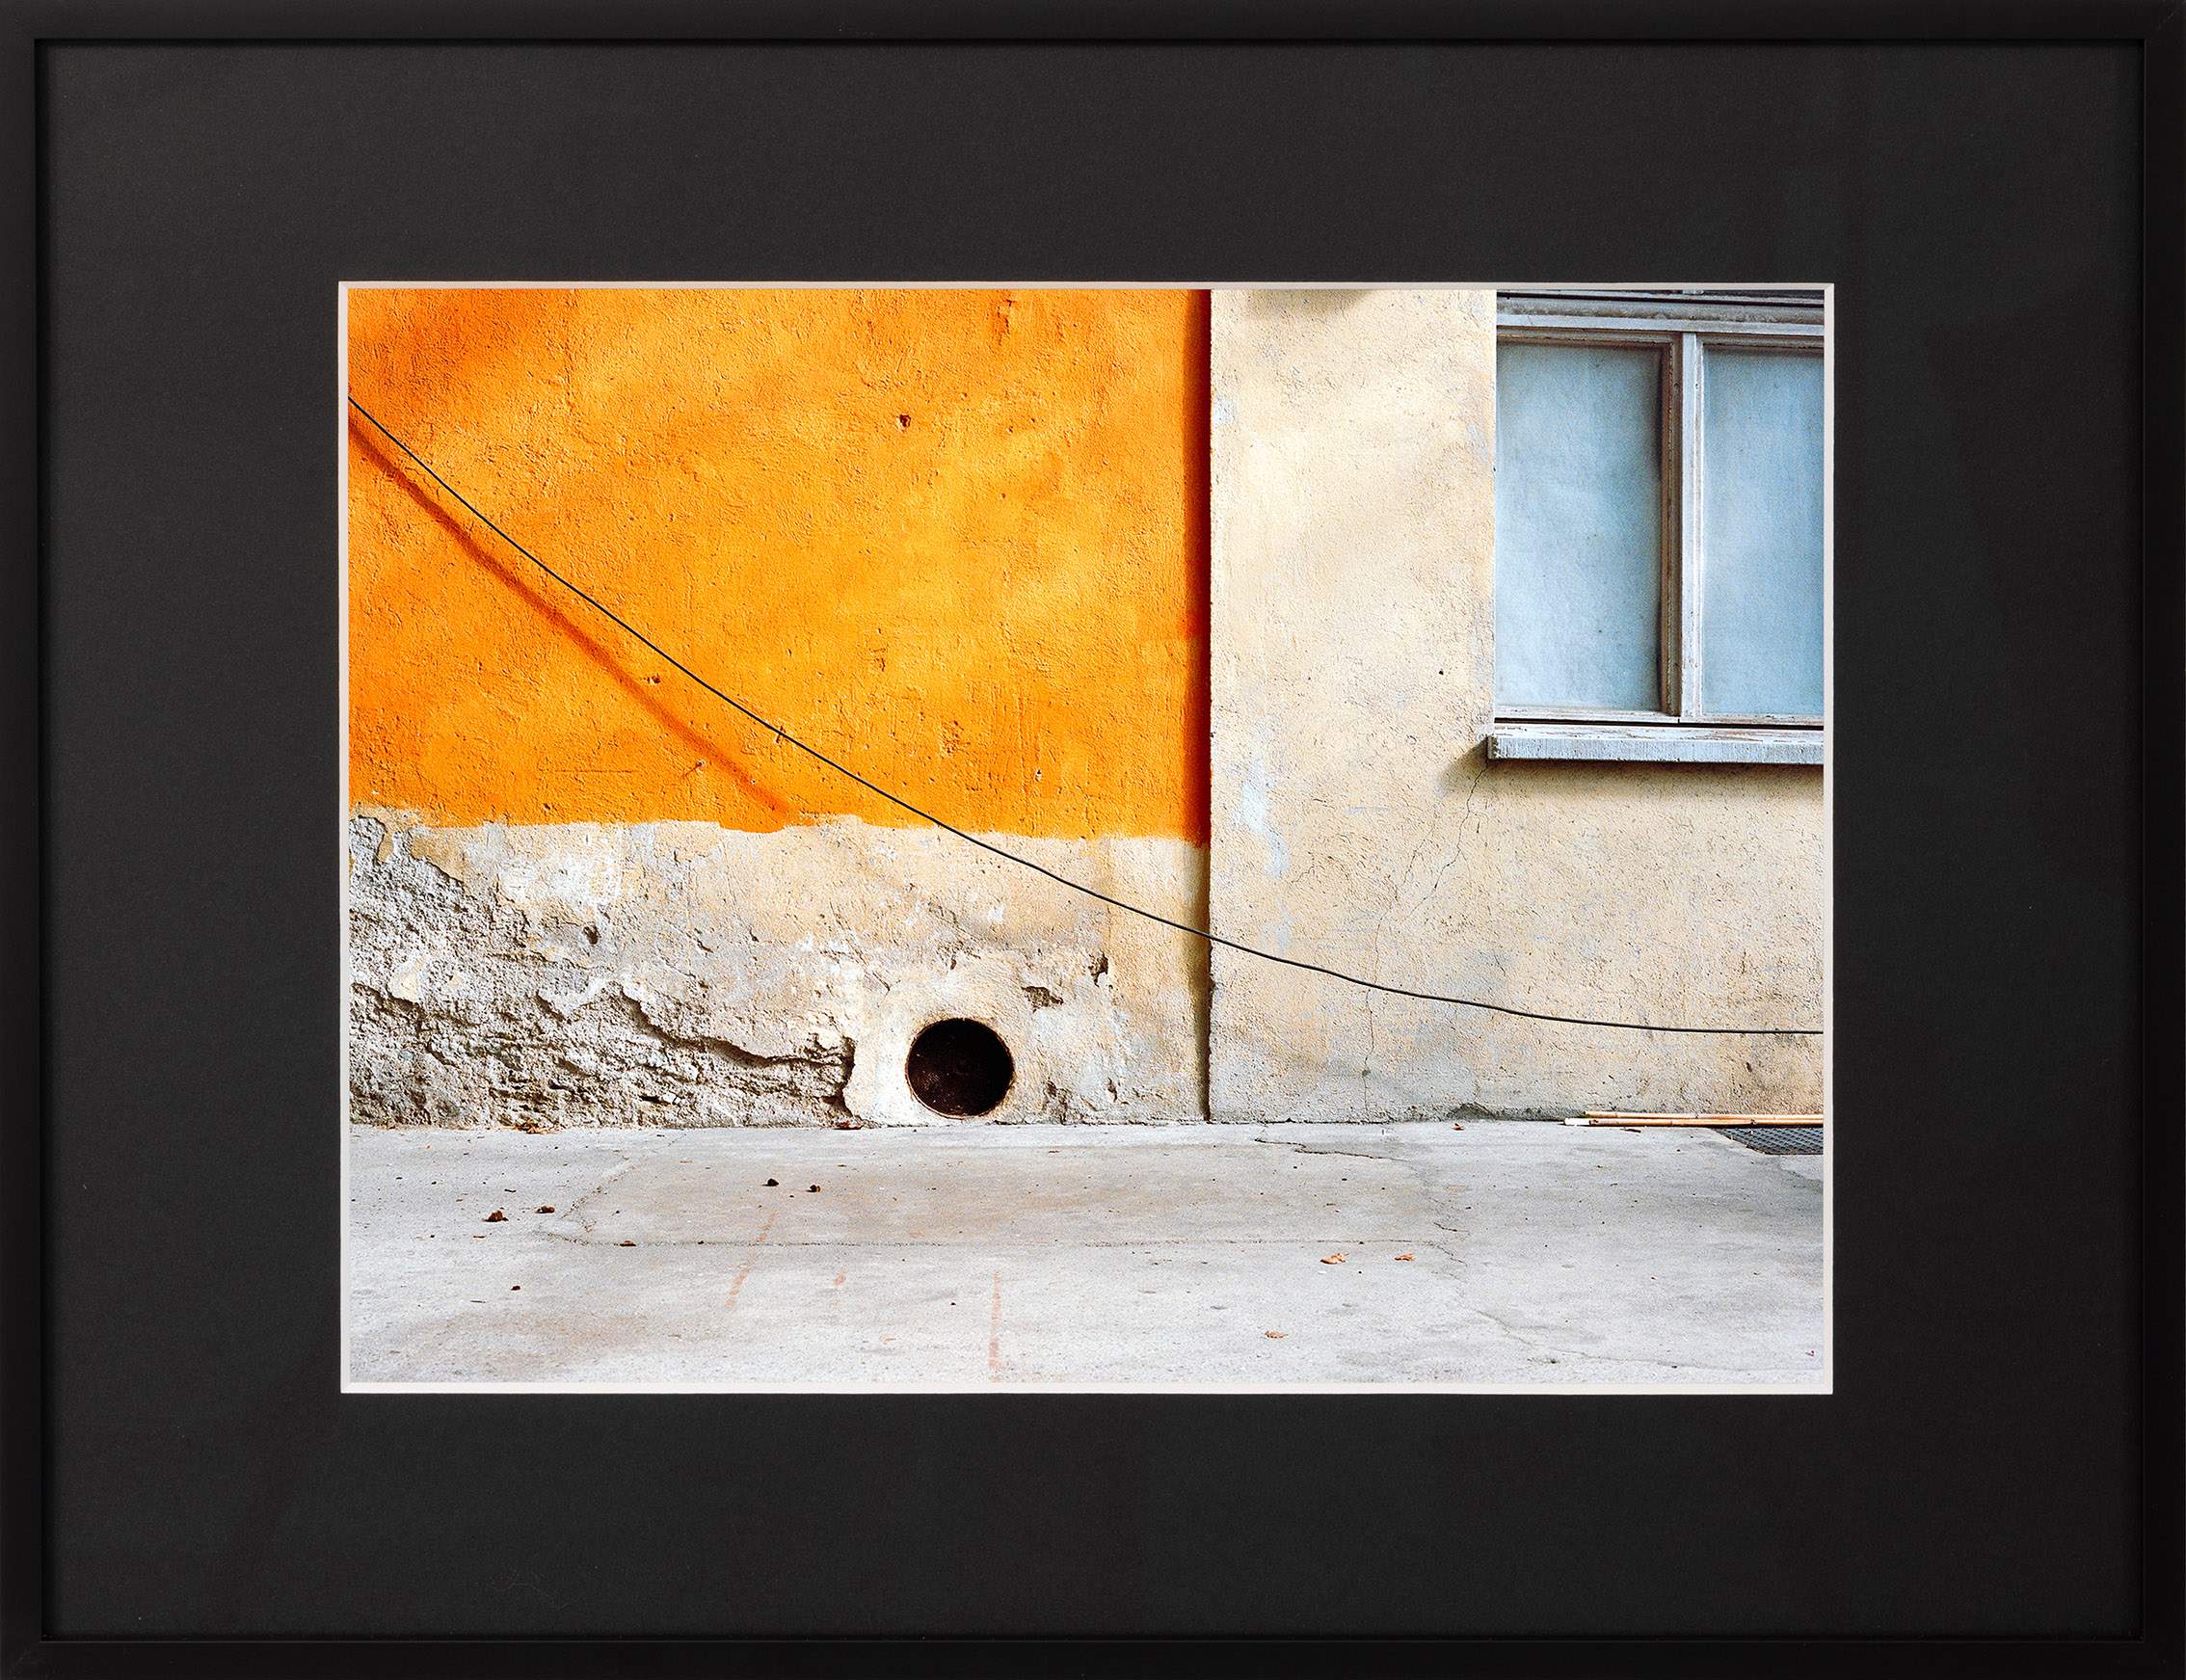 Cable On Orange - 50 x 40 cm, framed